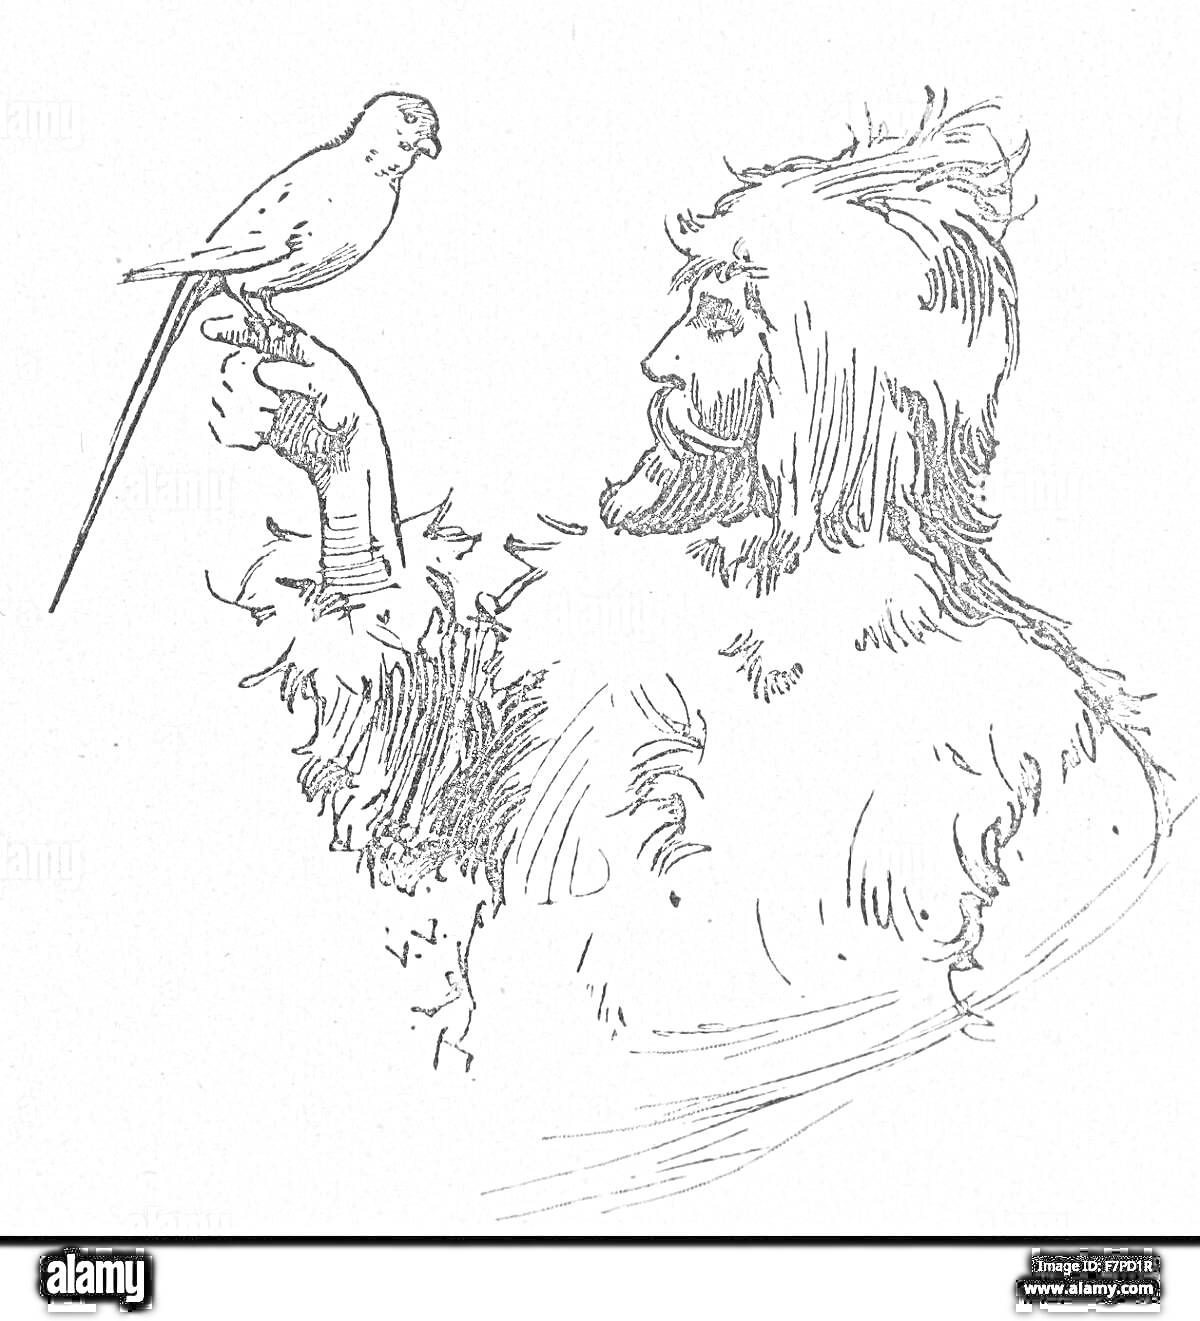 На раскраске изображено: Робинзон Крузо, Человек, Борода, Длинные волосы, Птица, Рука, Меховая одежда, Приключения, Остров, Выживание